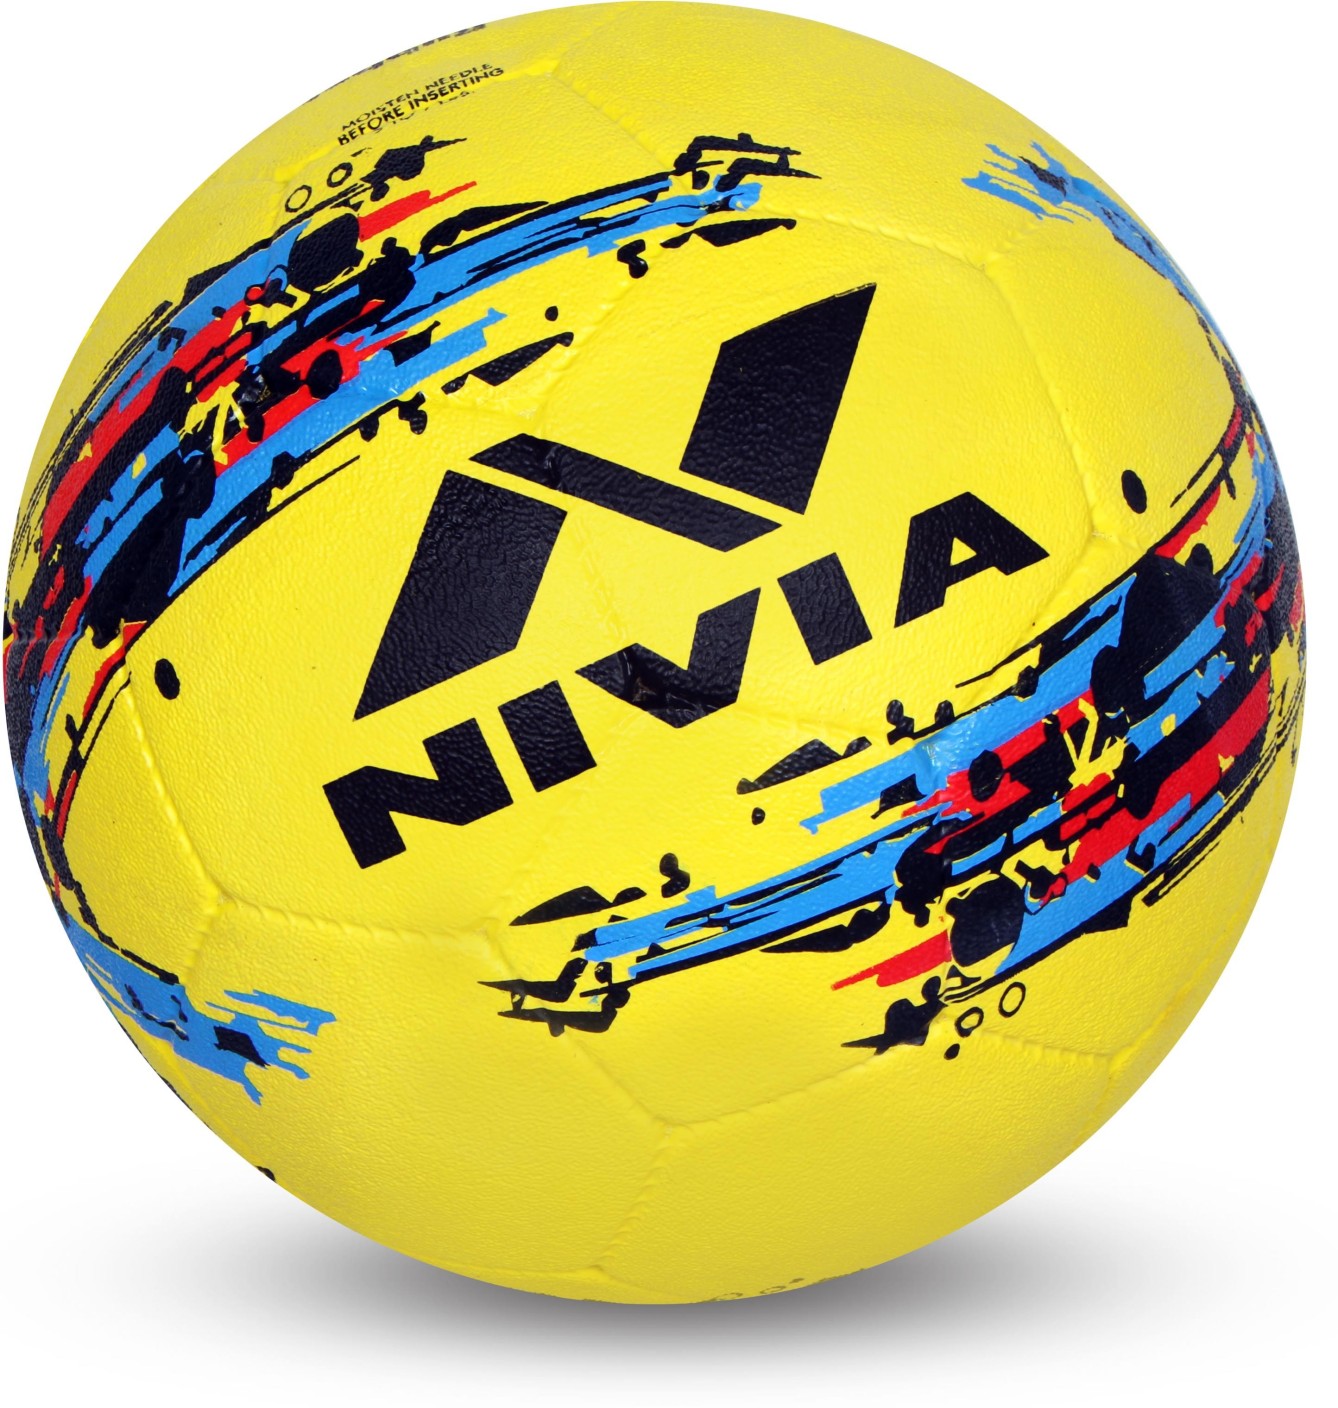 Nivia Storm Football Size 5 Buy Nivia Storm Football